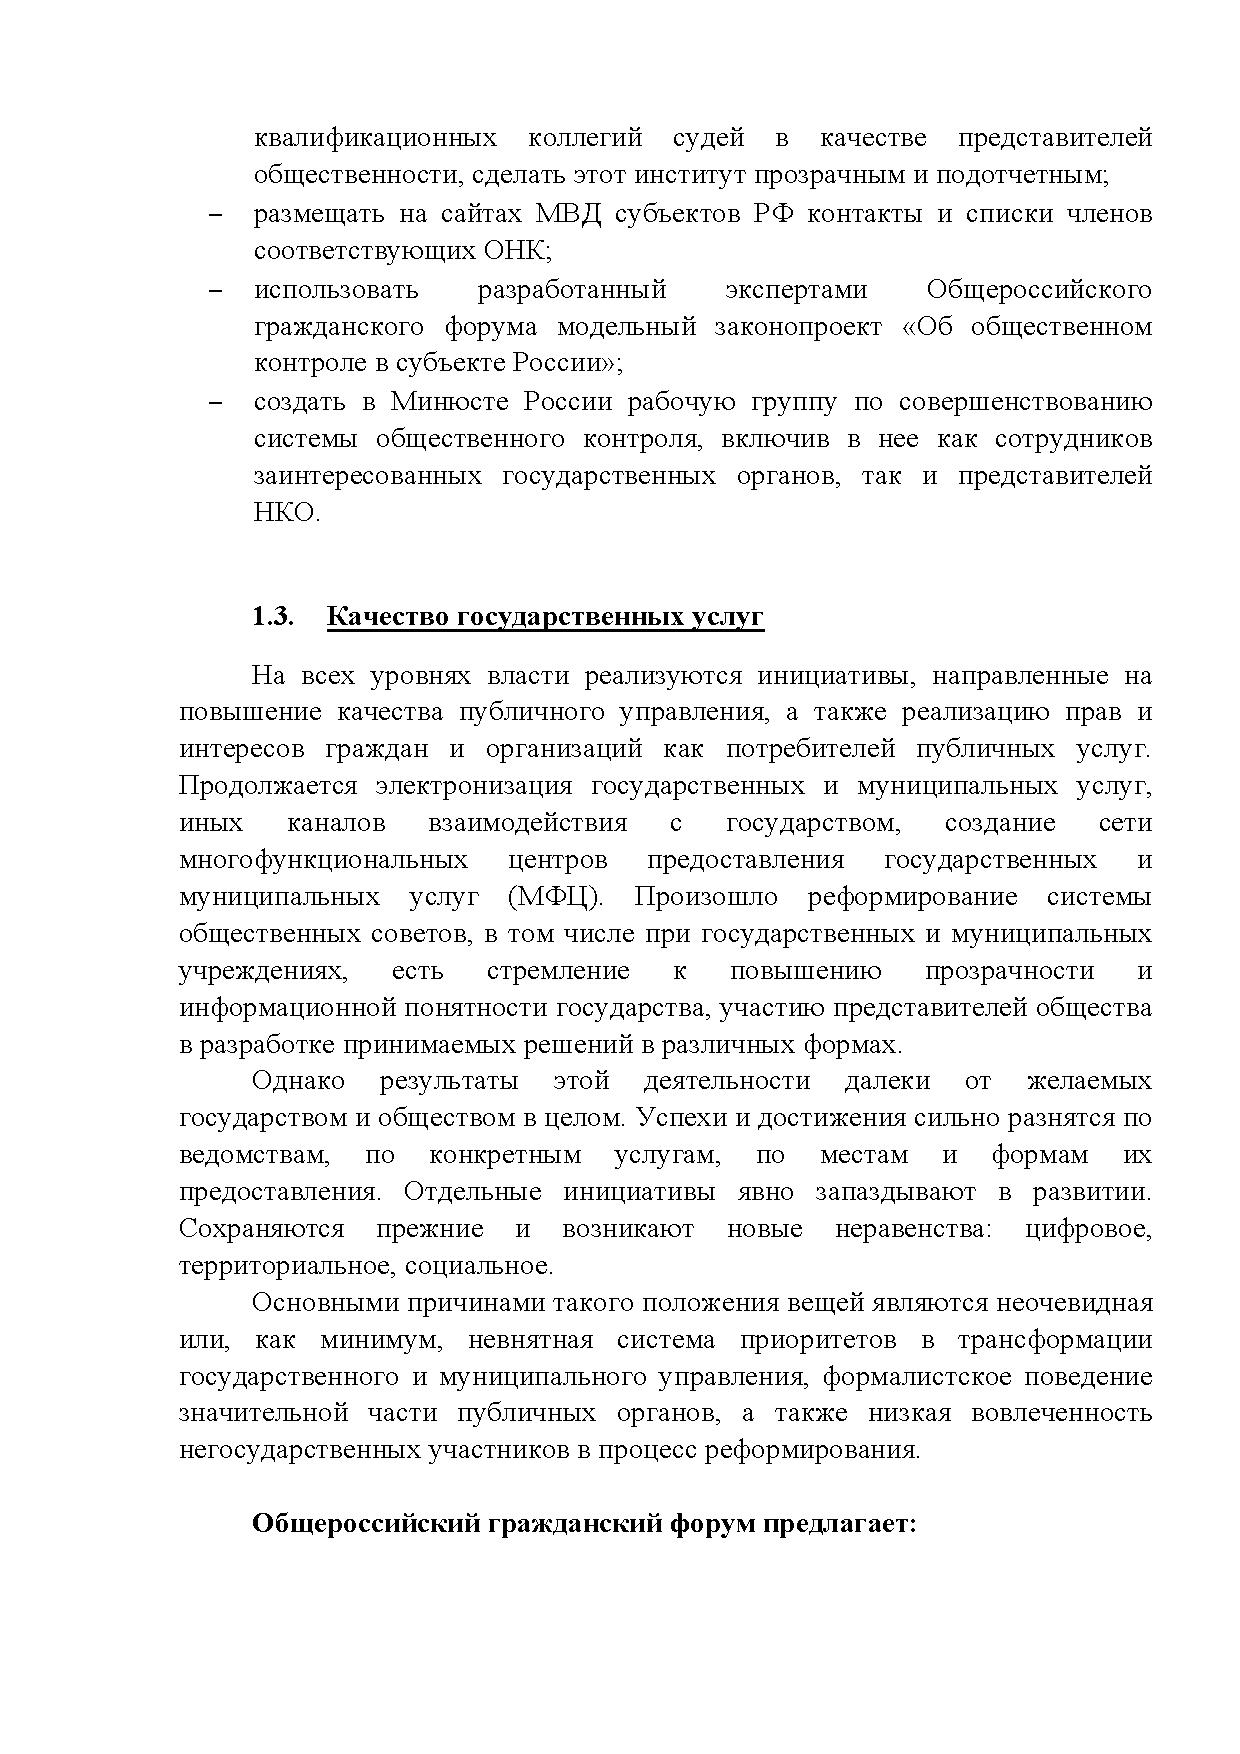  Опубликованы Предложения Общероссийского гражданского форума 2015 - фото 13